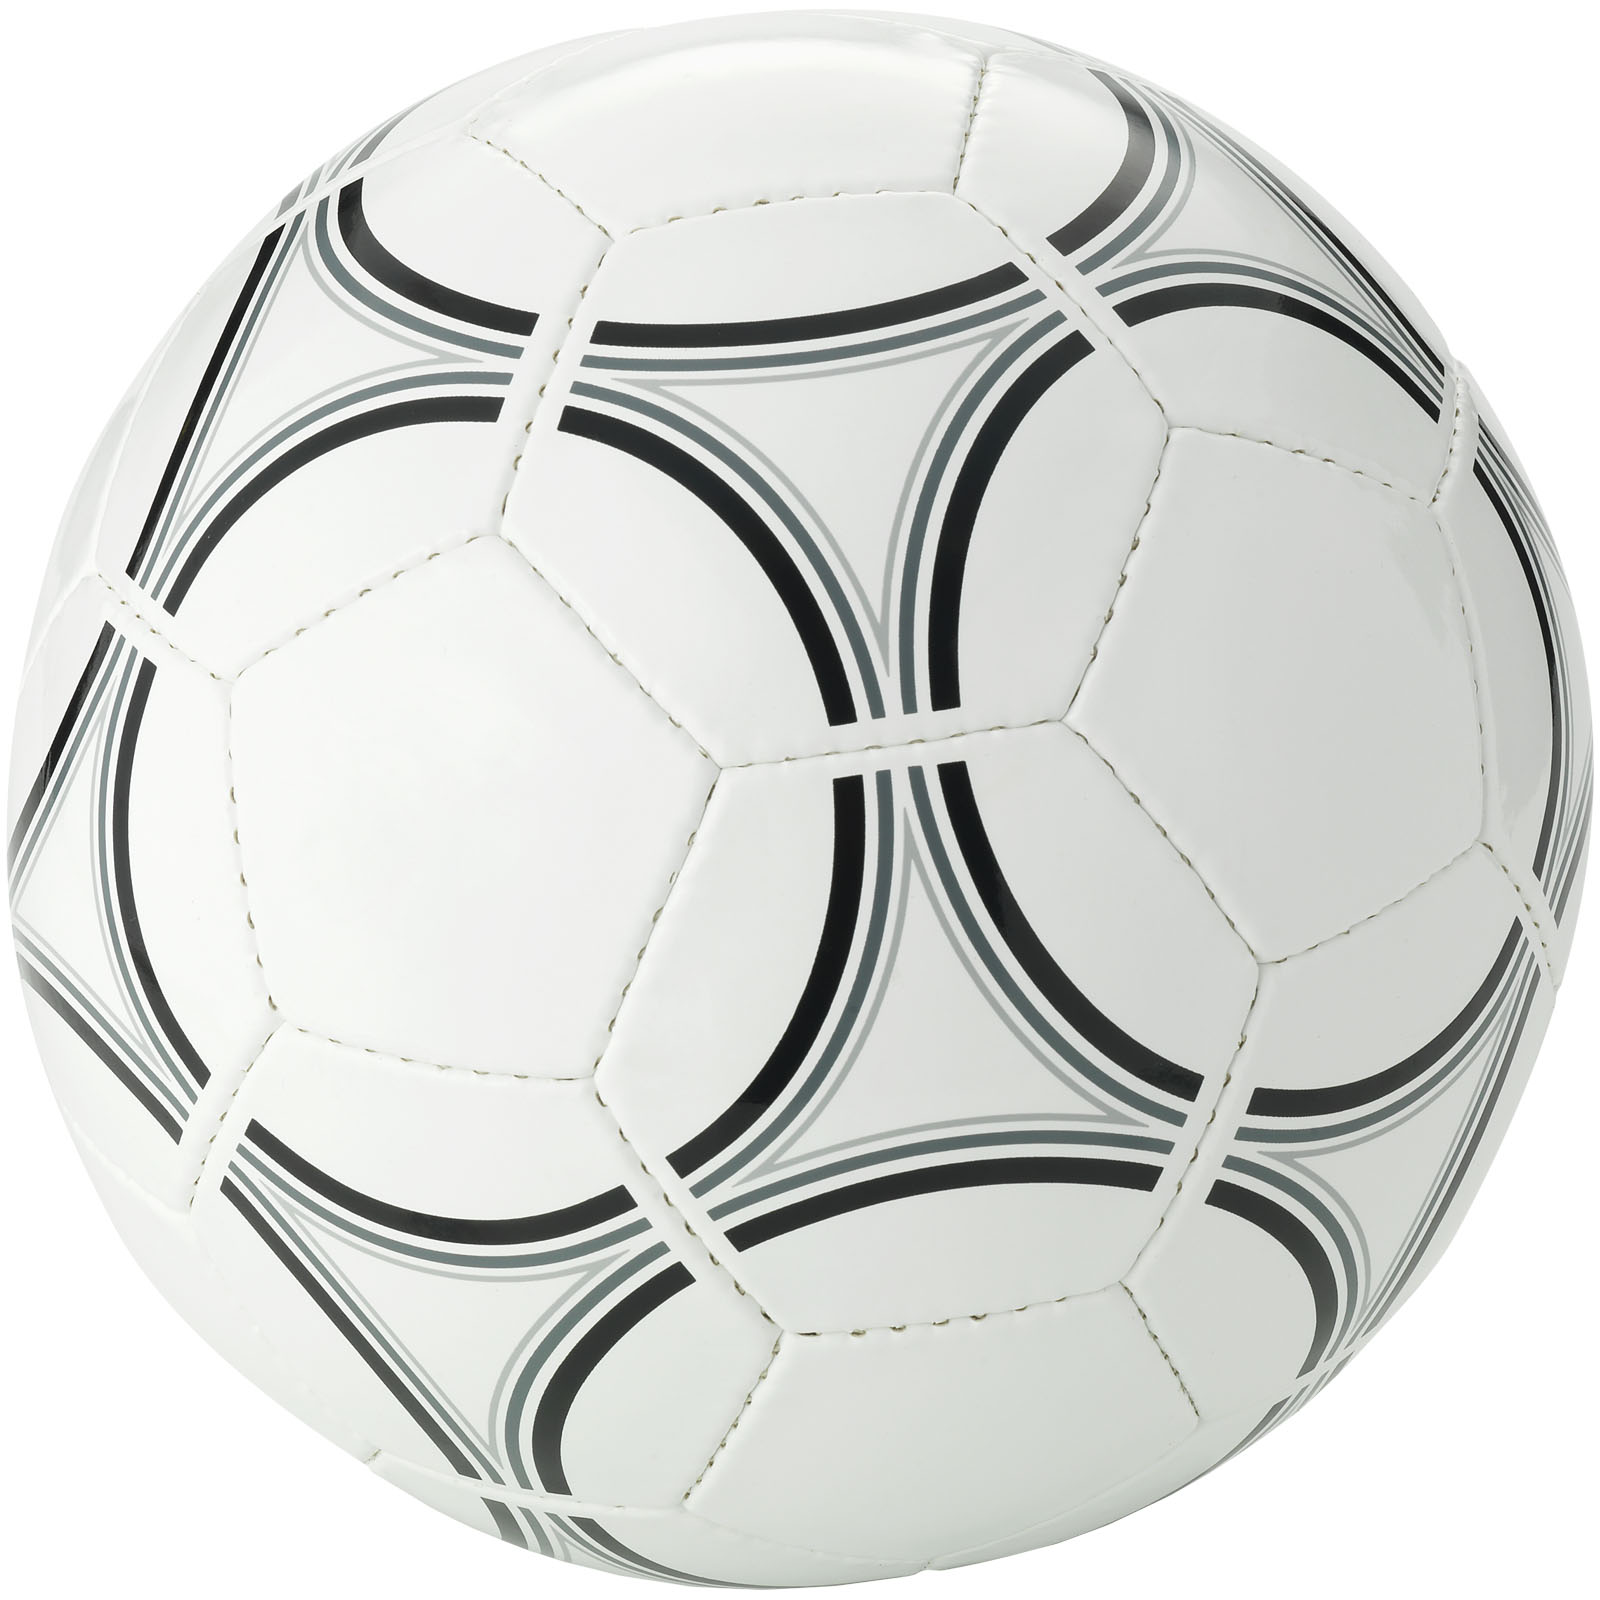 Ballon de football taille 5 personnalisé - Lilio - Zaprinta Belgique